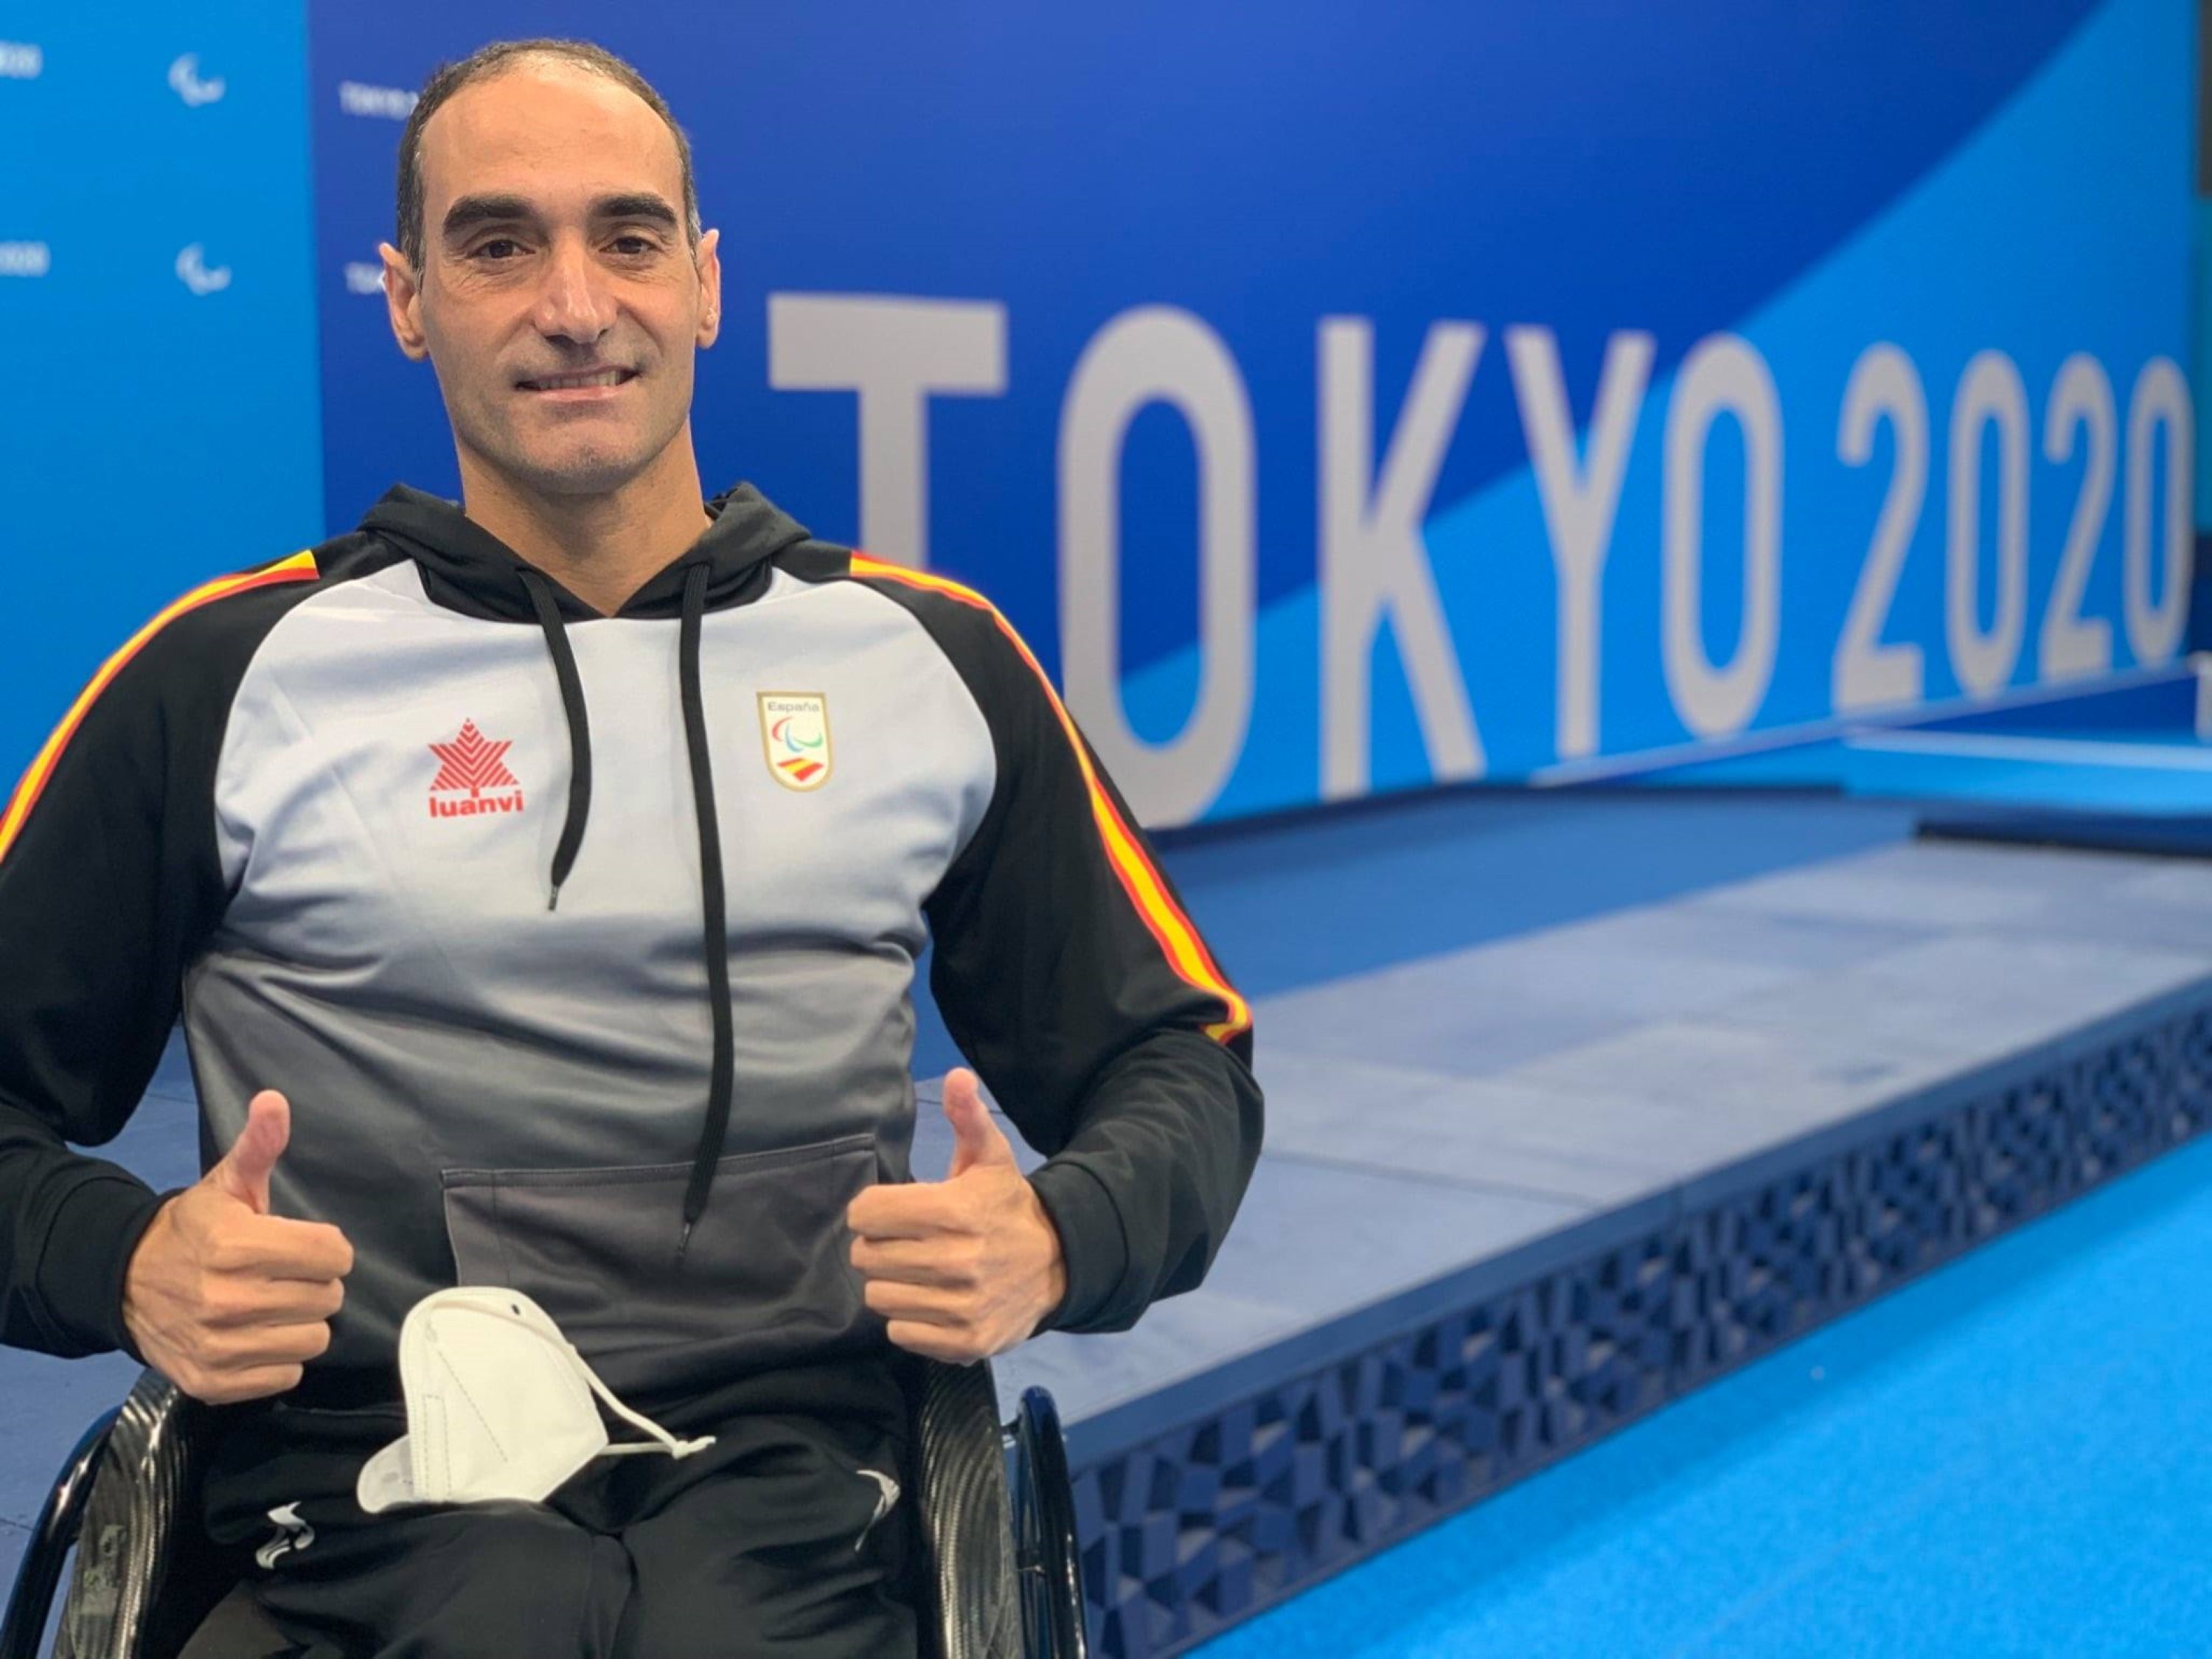 Miguel Luque Tokio 2020 Paralimpicos @AjuntamentParets